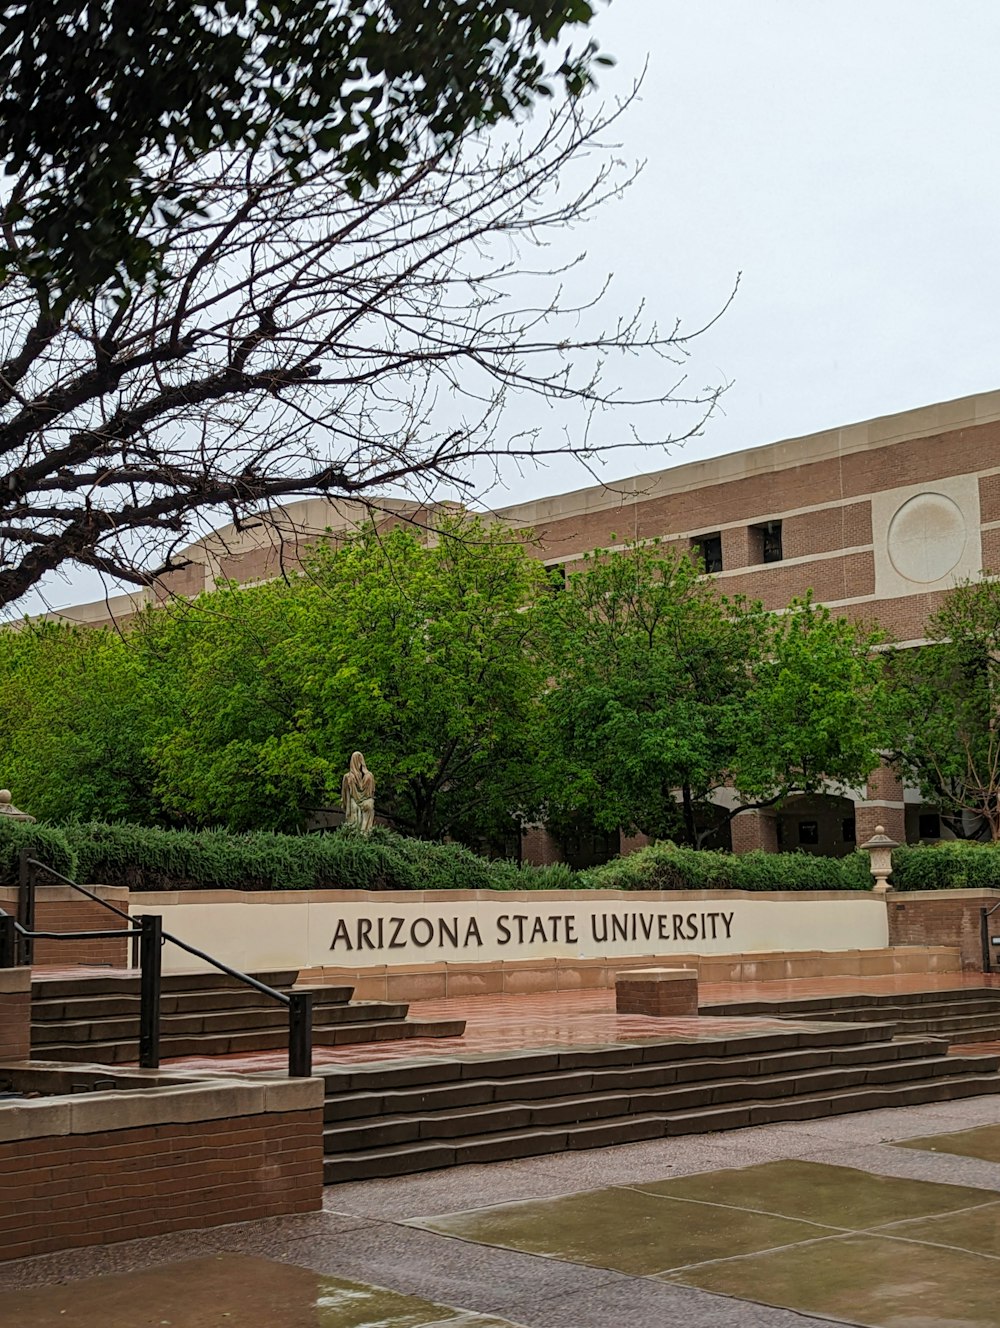 o sinal da universidade estadual arizona está em frente a um prédio